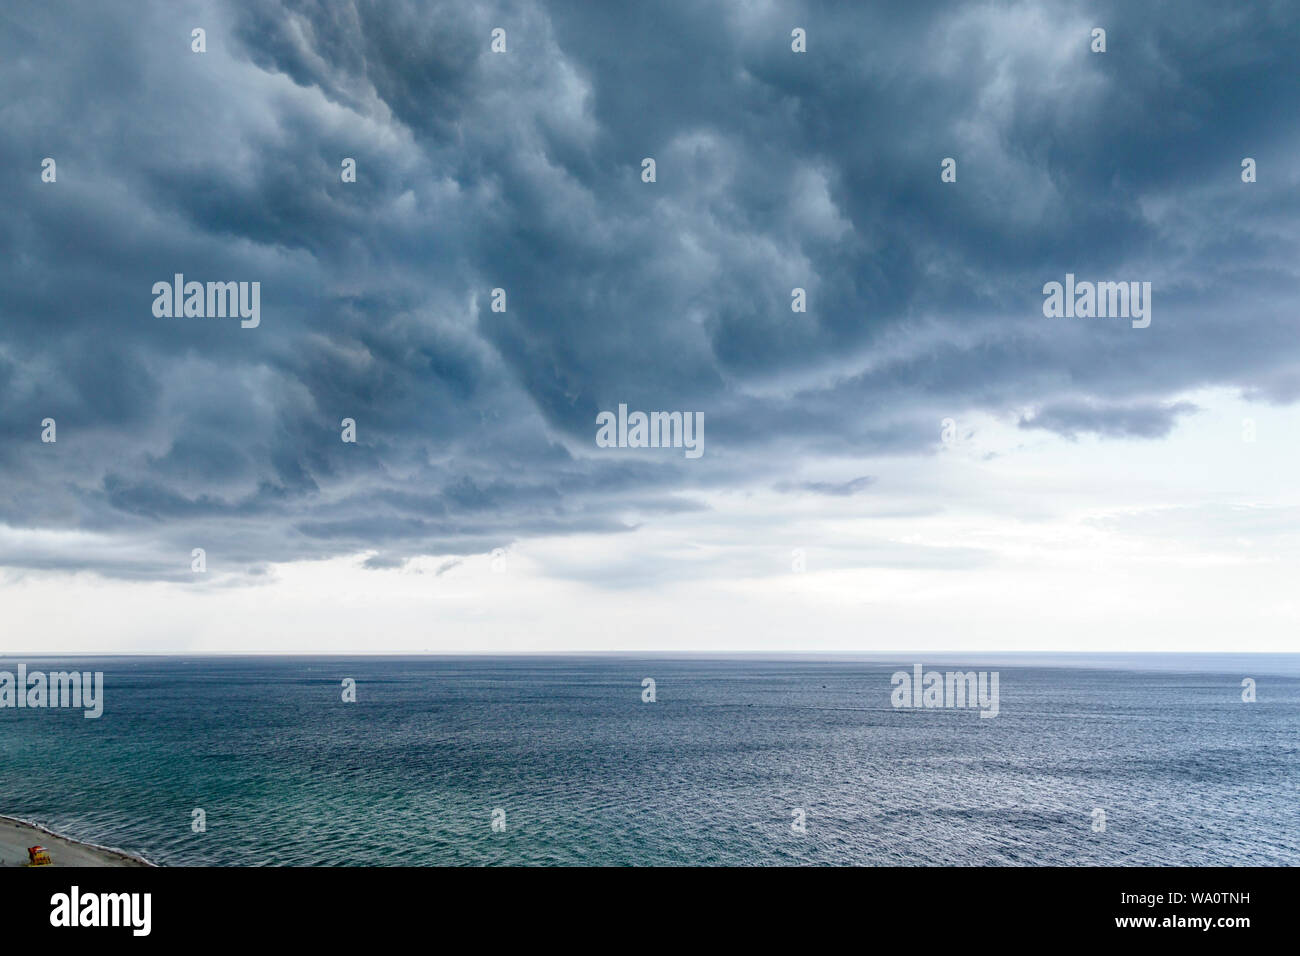 Miami Beach Florida,Océano Atlántico,nubes clima cielo,nubes tormenta reunión,lluvia rainlouds,FL190731030 Foto de stock